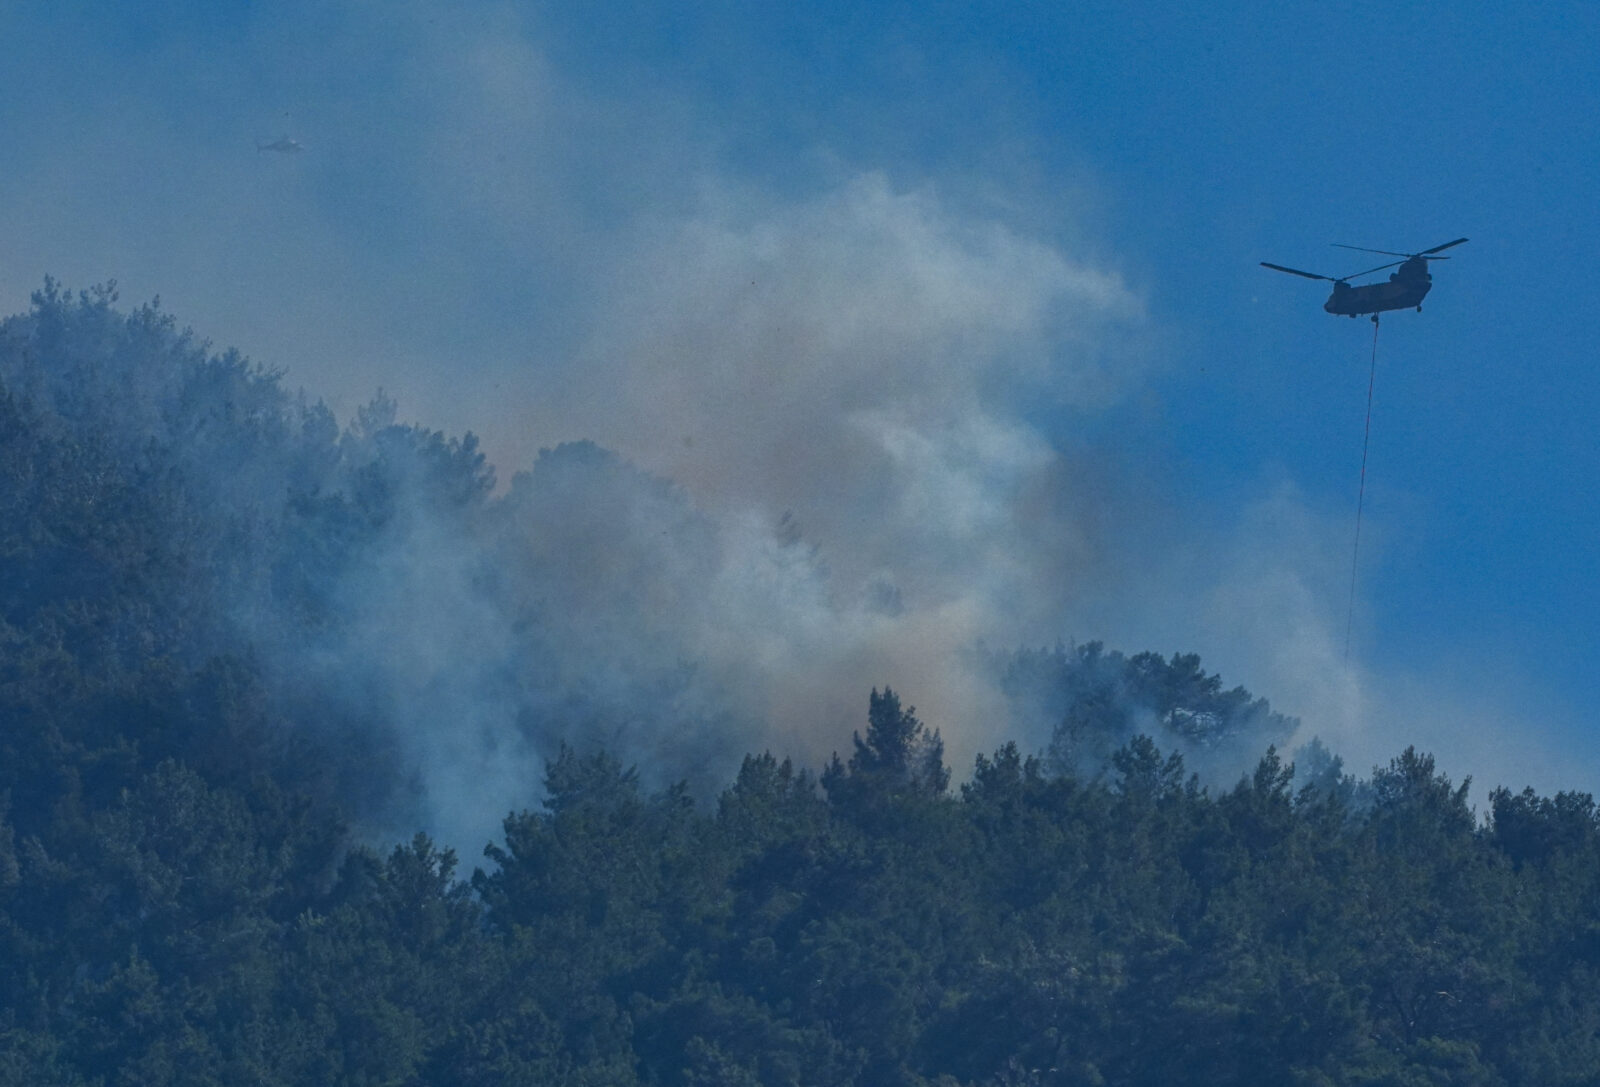 Guide on what to do as devastating wildfires ravage Türkiye's coastal regions